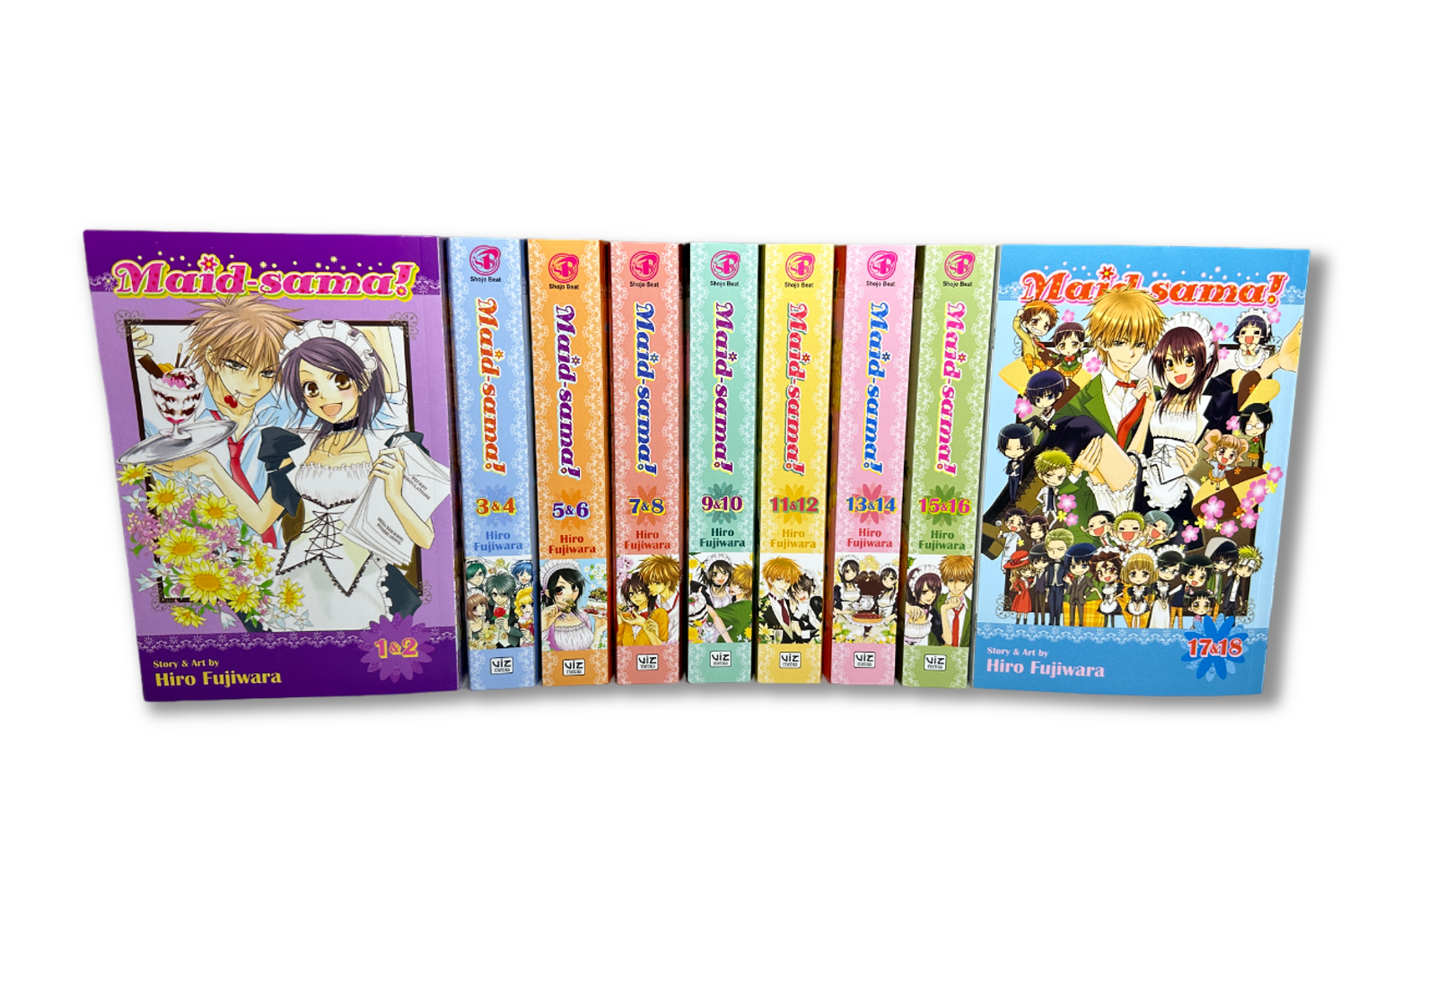 Maid-Sama! 2-in-1 Omnibus Volumes 1-9 (1-18) Complete Set